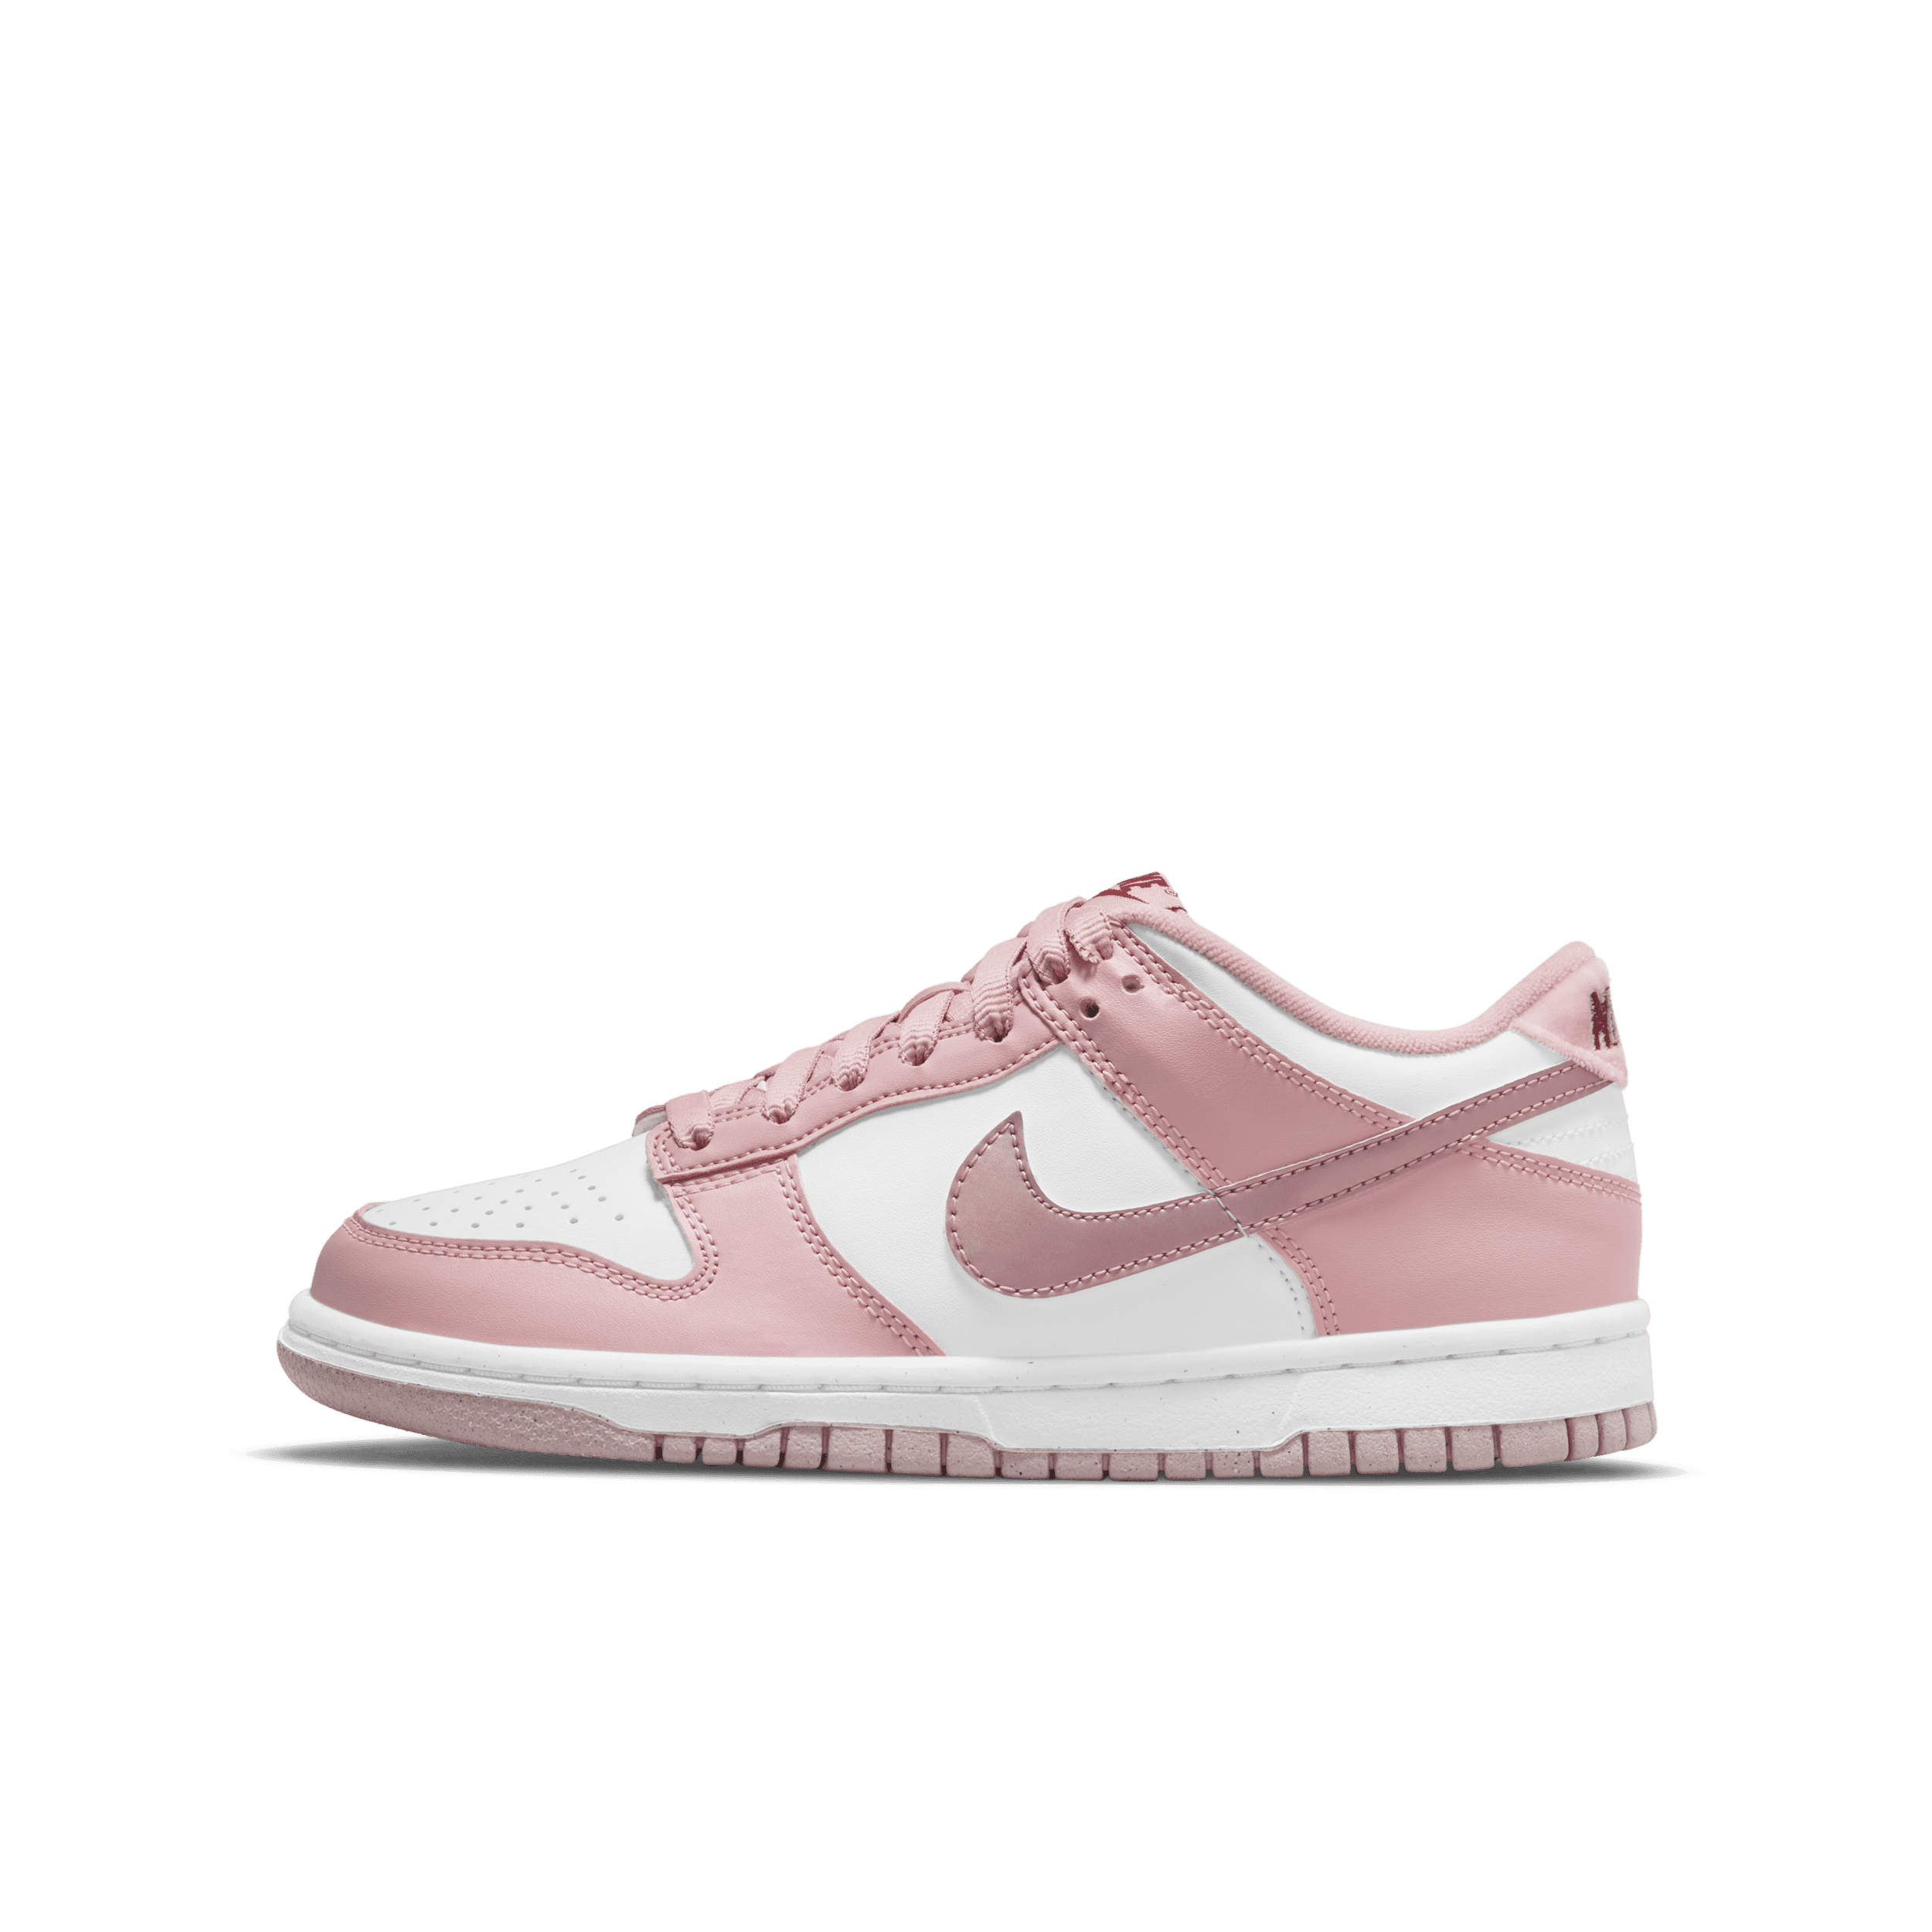 Nike Dunk Low Kinderschoenen - Roze